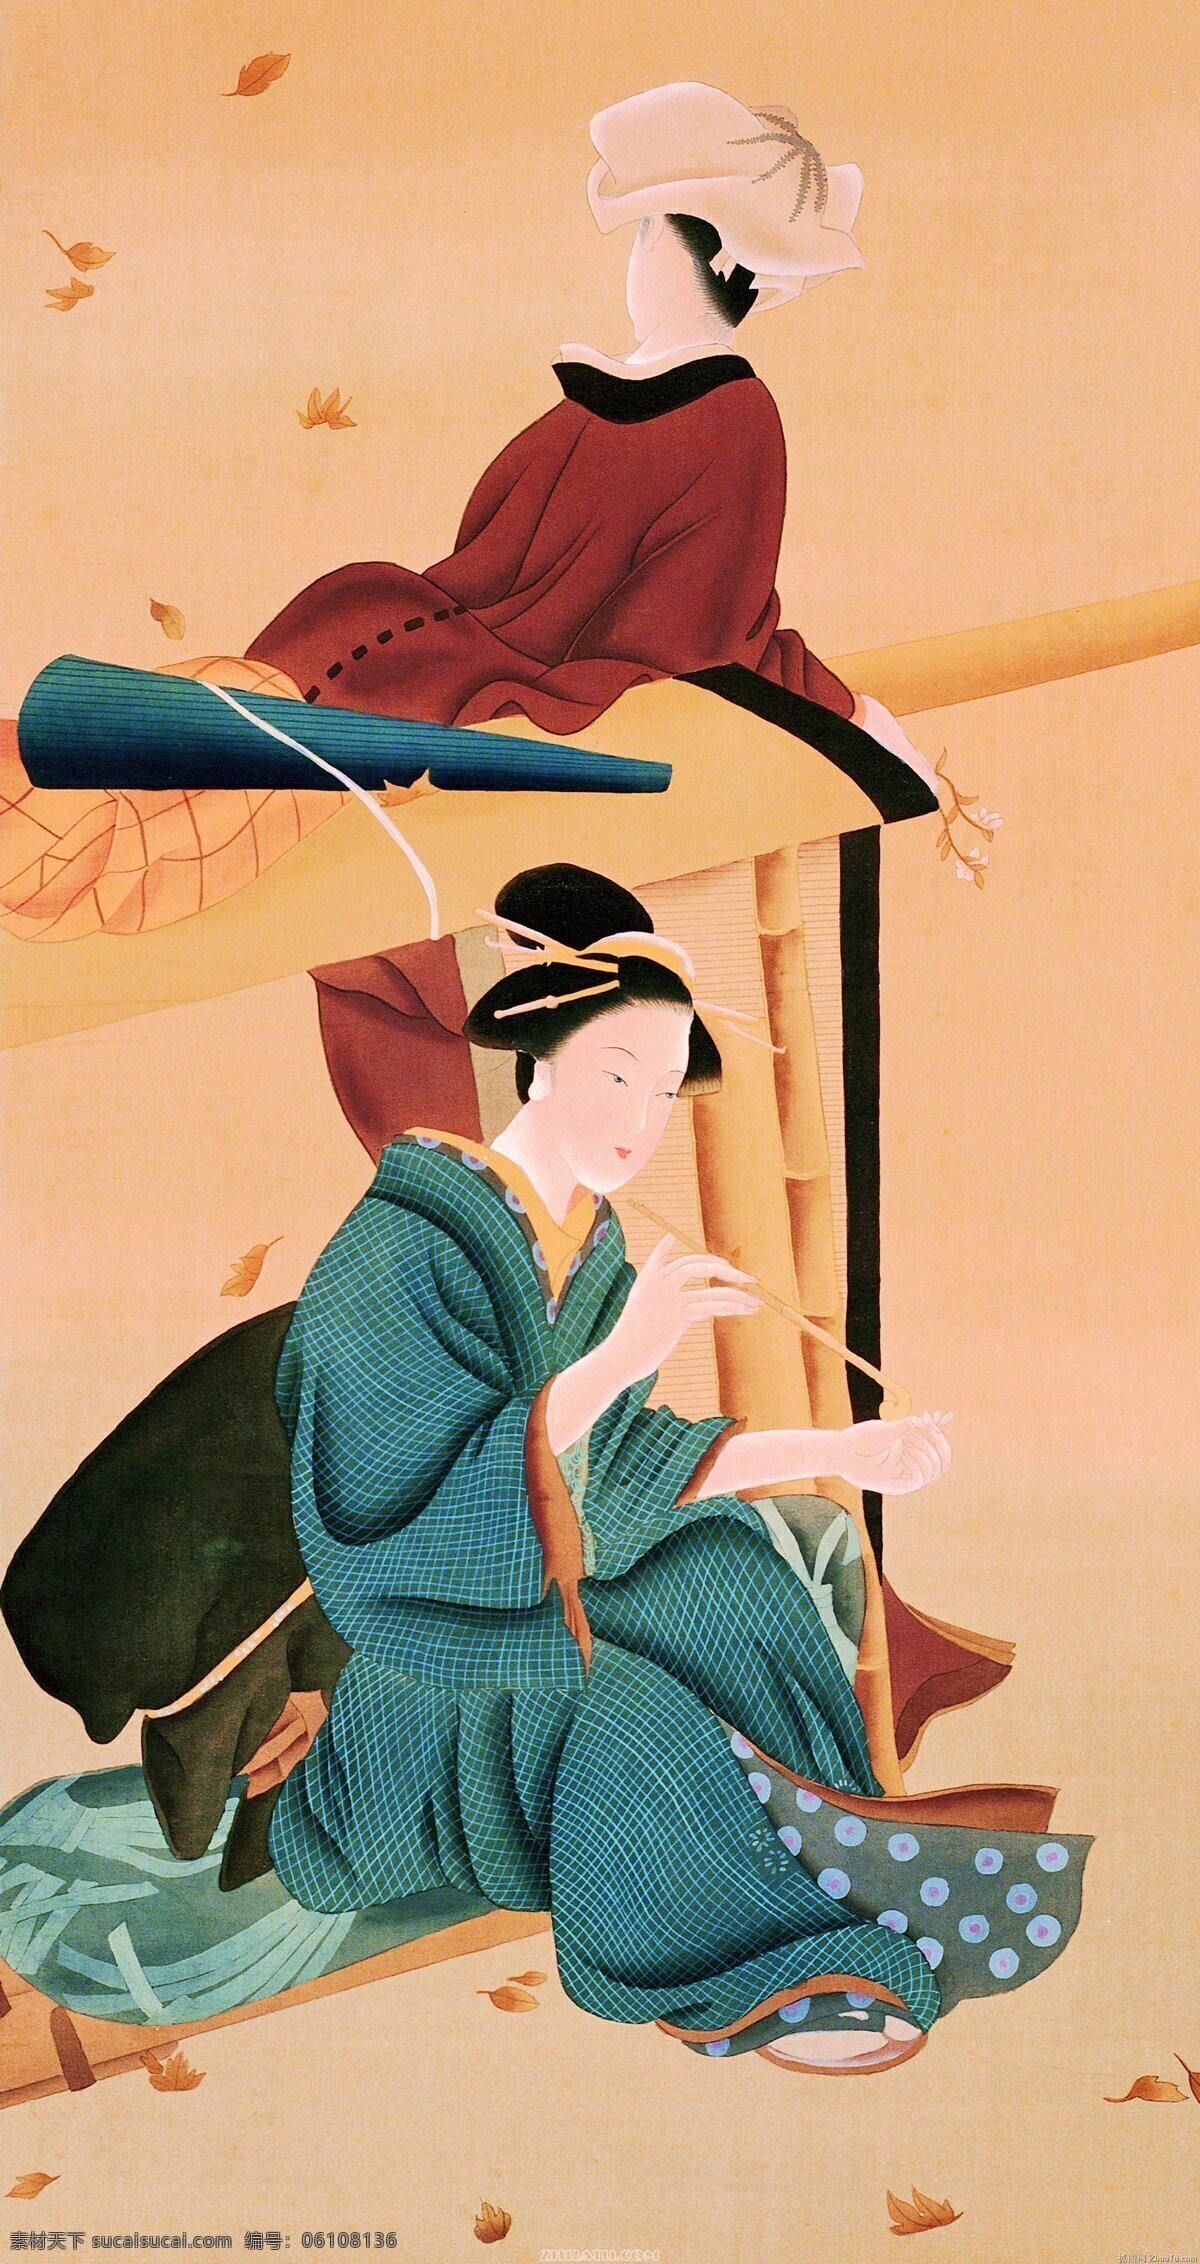 日本美女图 日本 日式风格 浮世绘 和风 江户时代 美女图